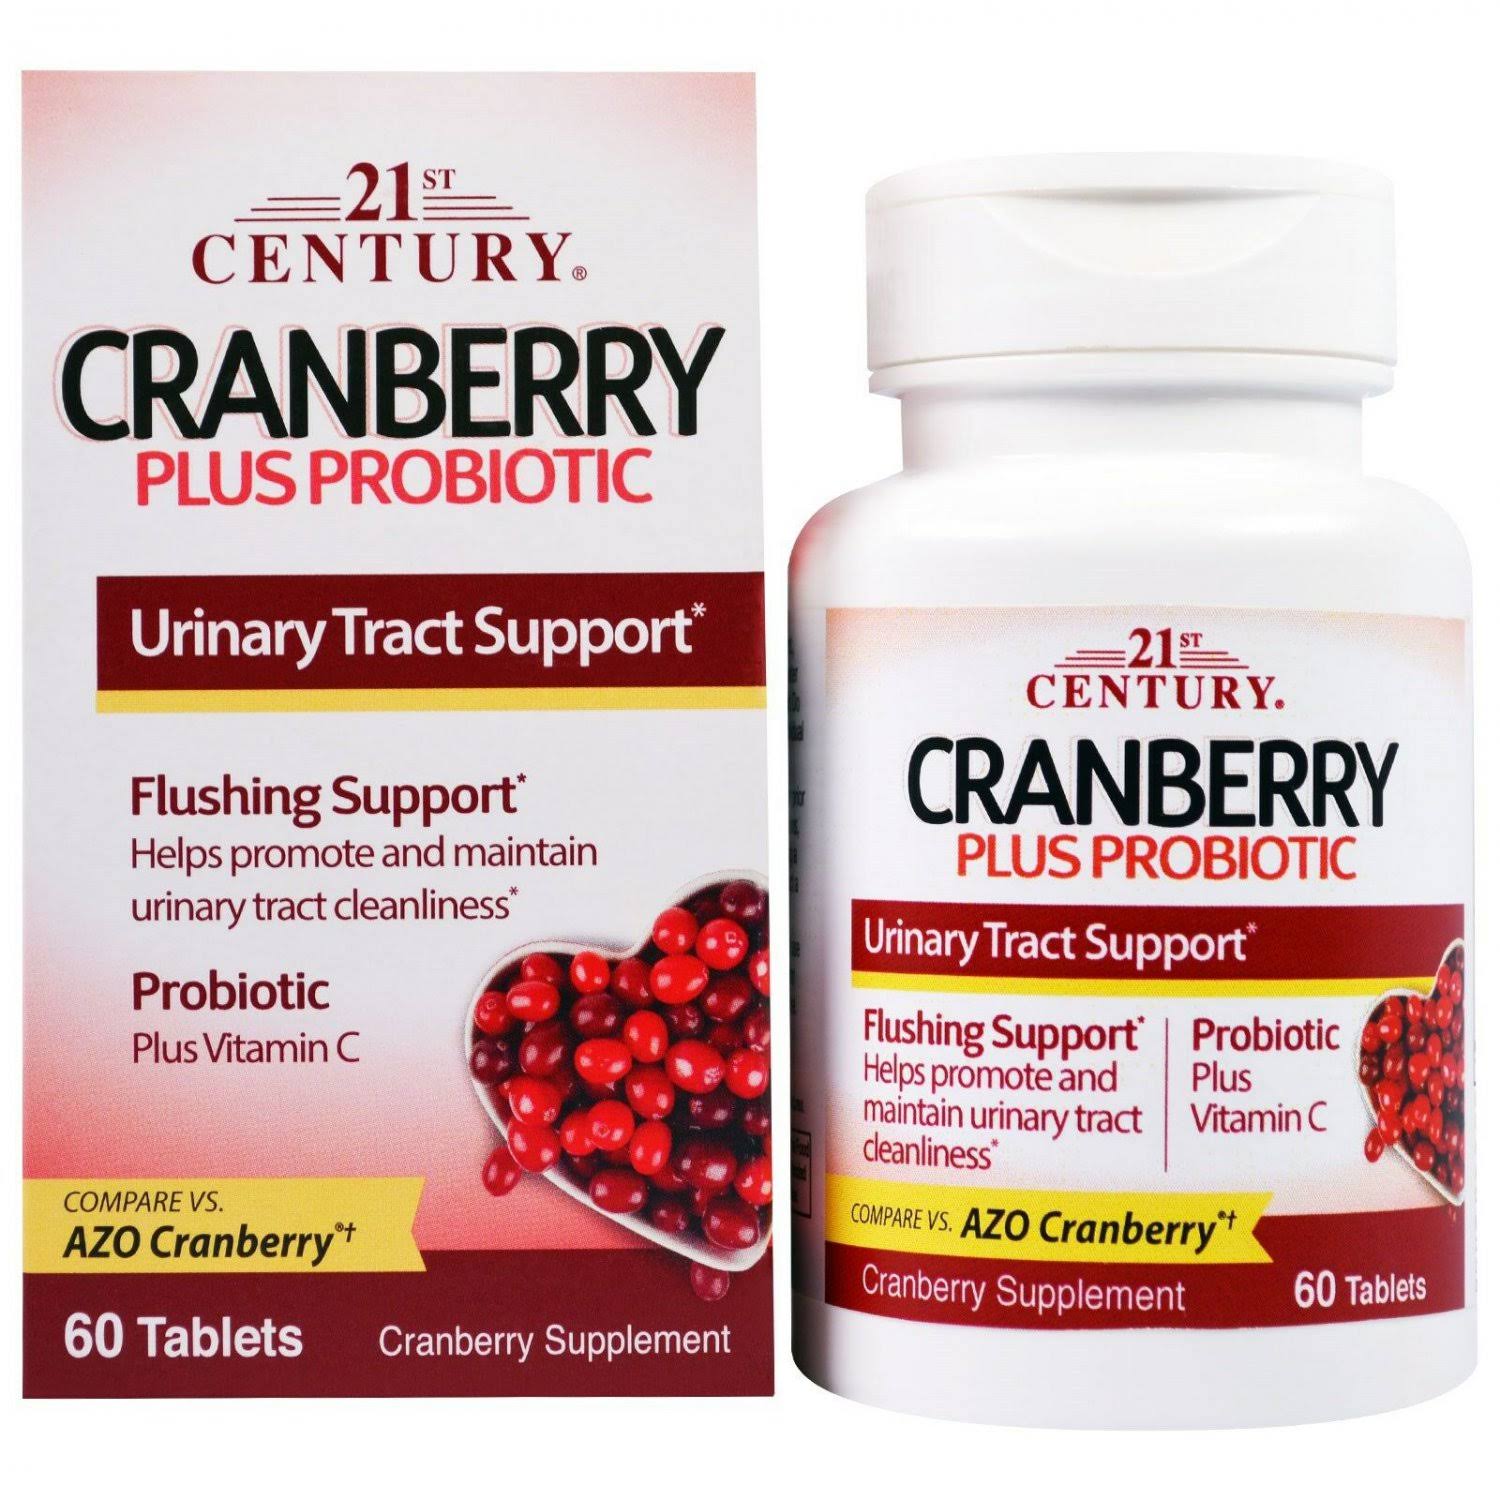 21st Century Cranberry Plus Probiotic Supplement - 60 Tablets